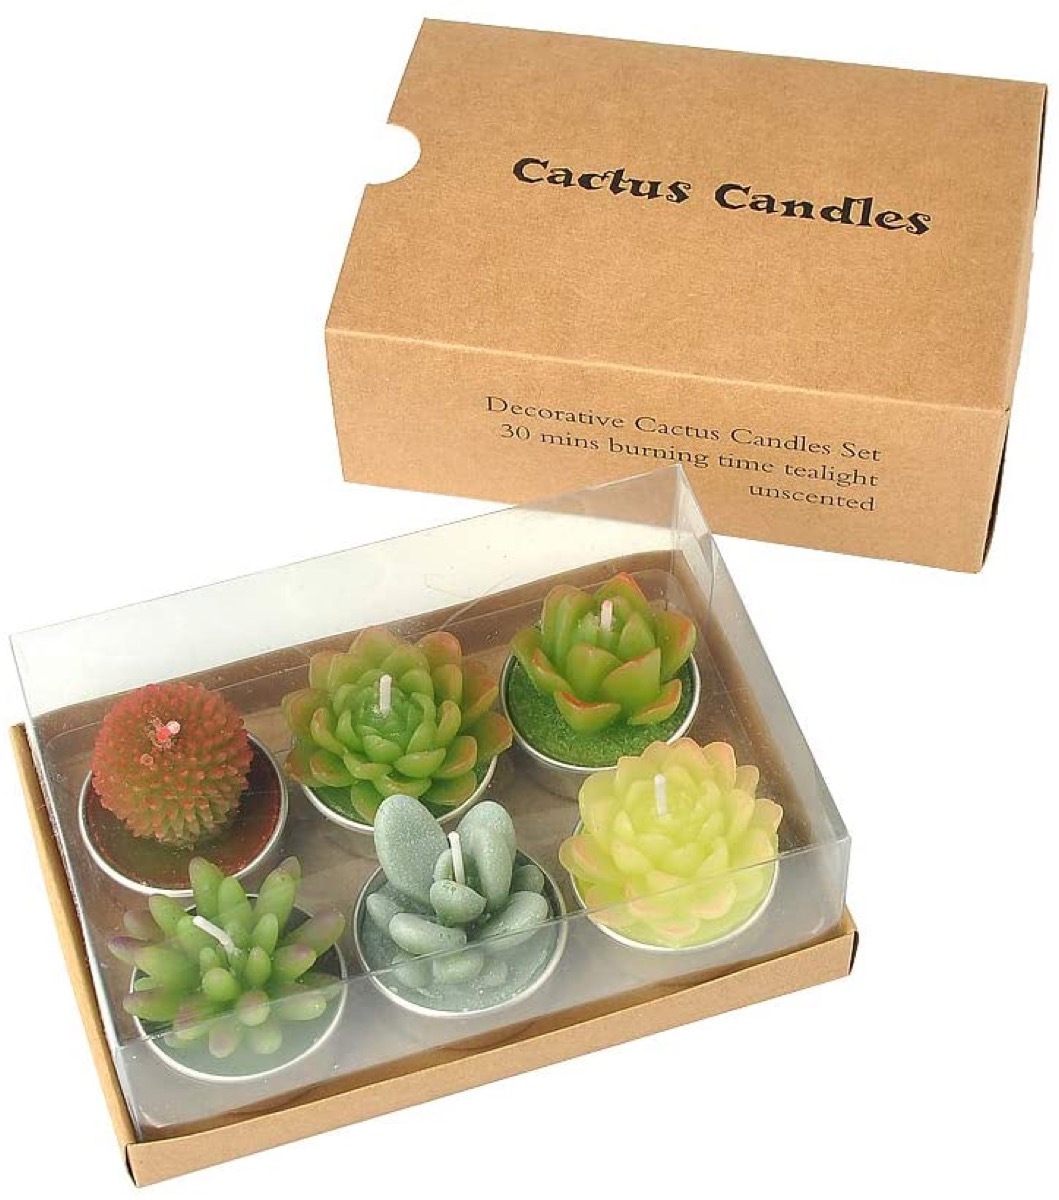 Succulent candle set